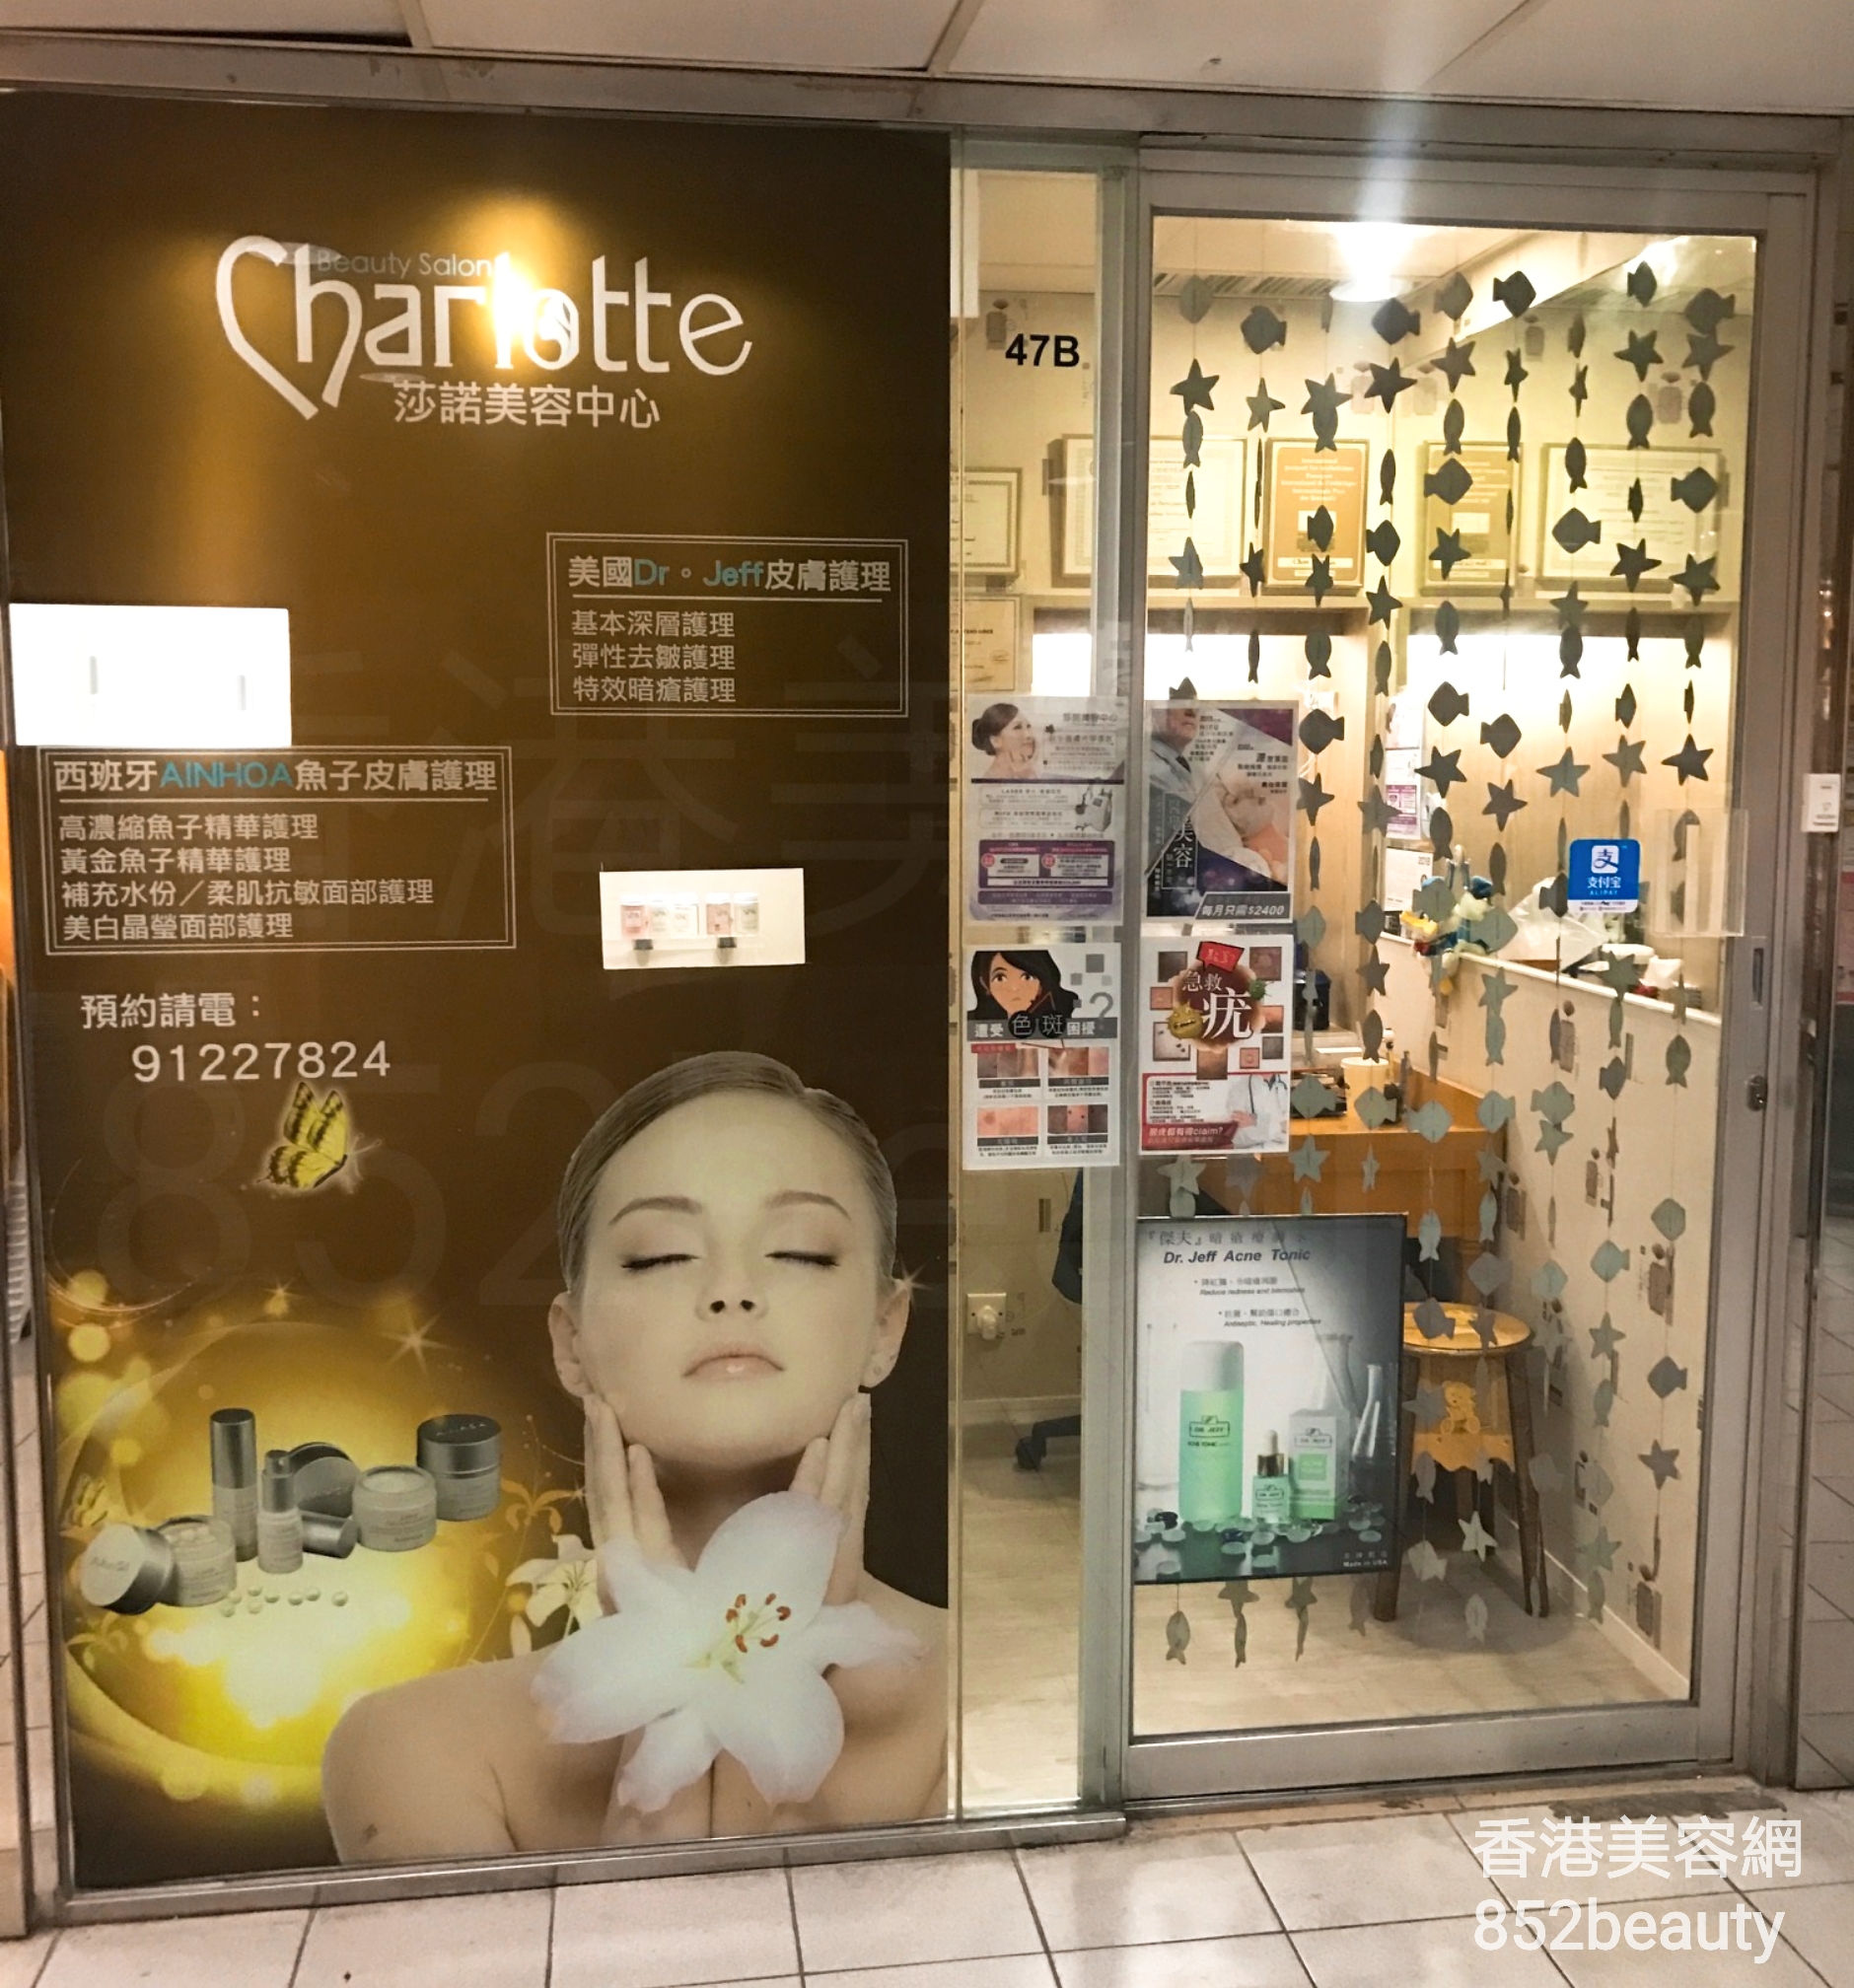 脫毛: 莎諾美容中心 Charlotte Beauty Salon